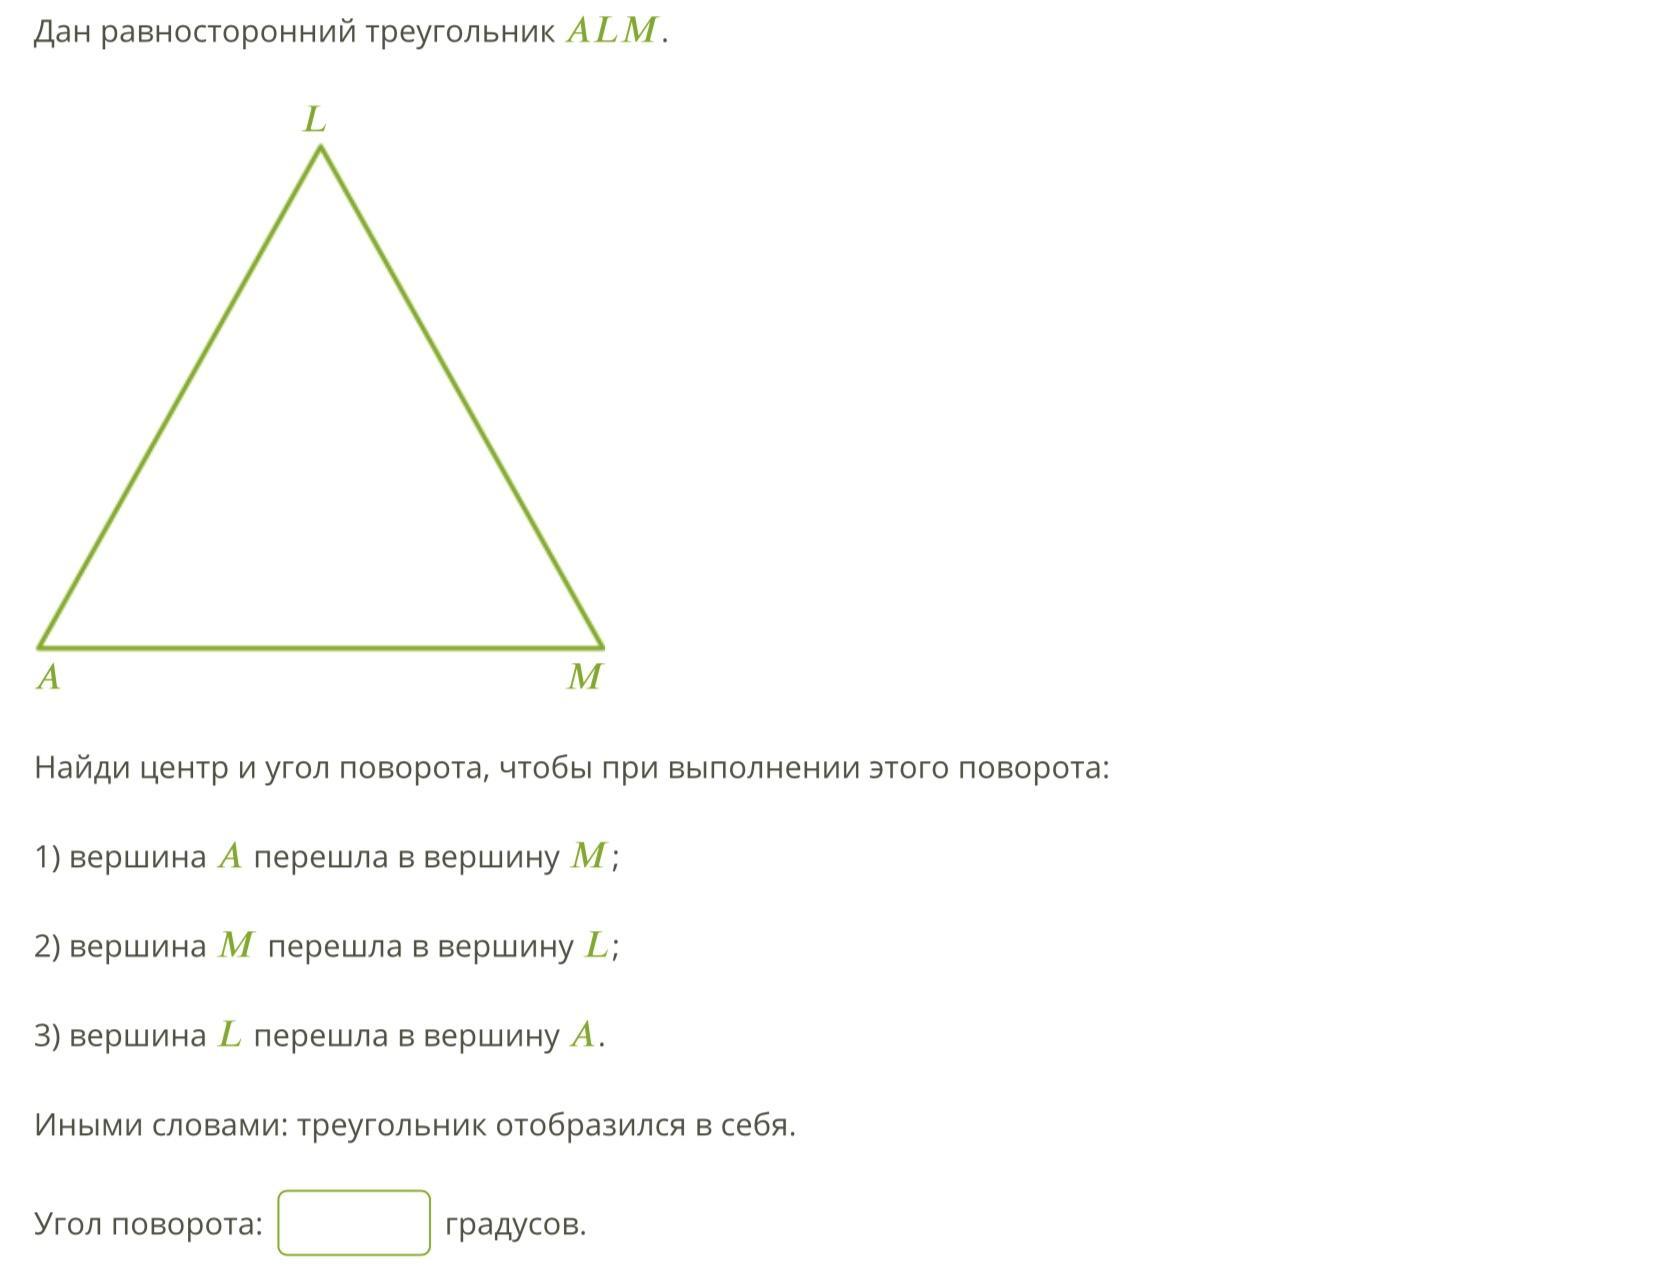 Задачи на равносторонний треугольник. Вершины равностороннего треугольника. Равносторонний треугольник в равностороннем треугольнике. Центр равностороннего треугольника. Углы равностороннего треугольника равны 60.